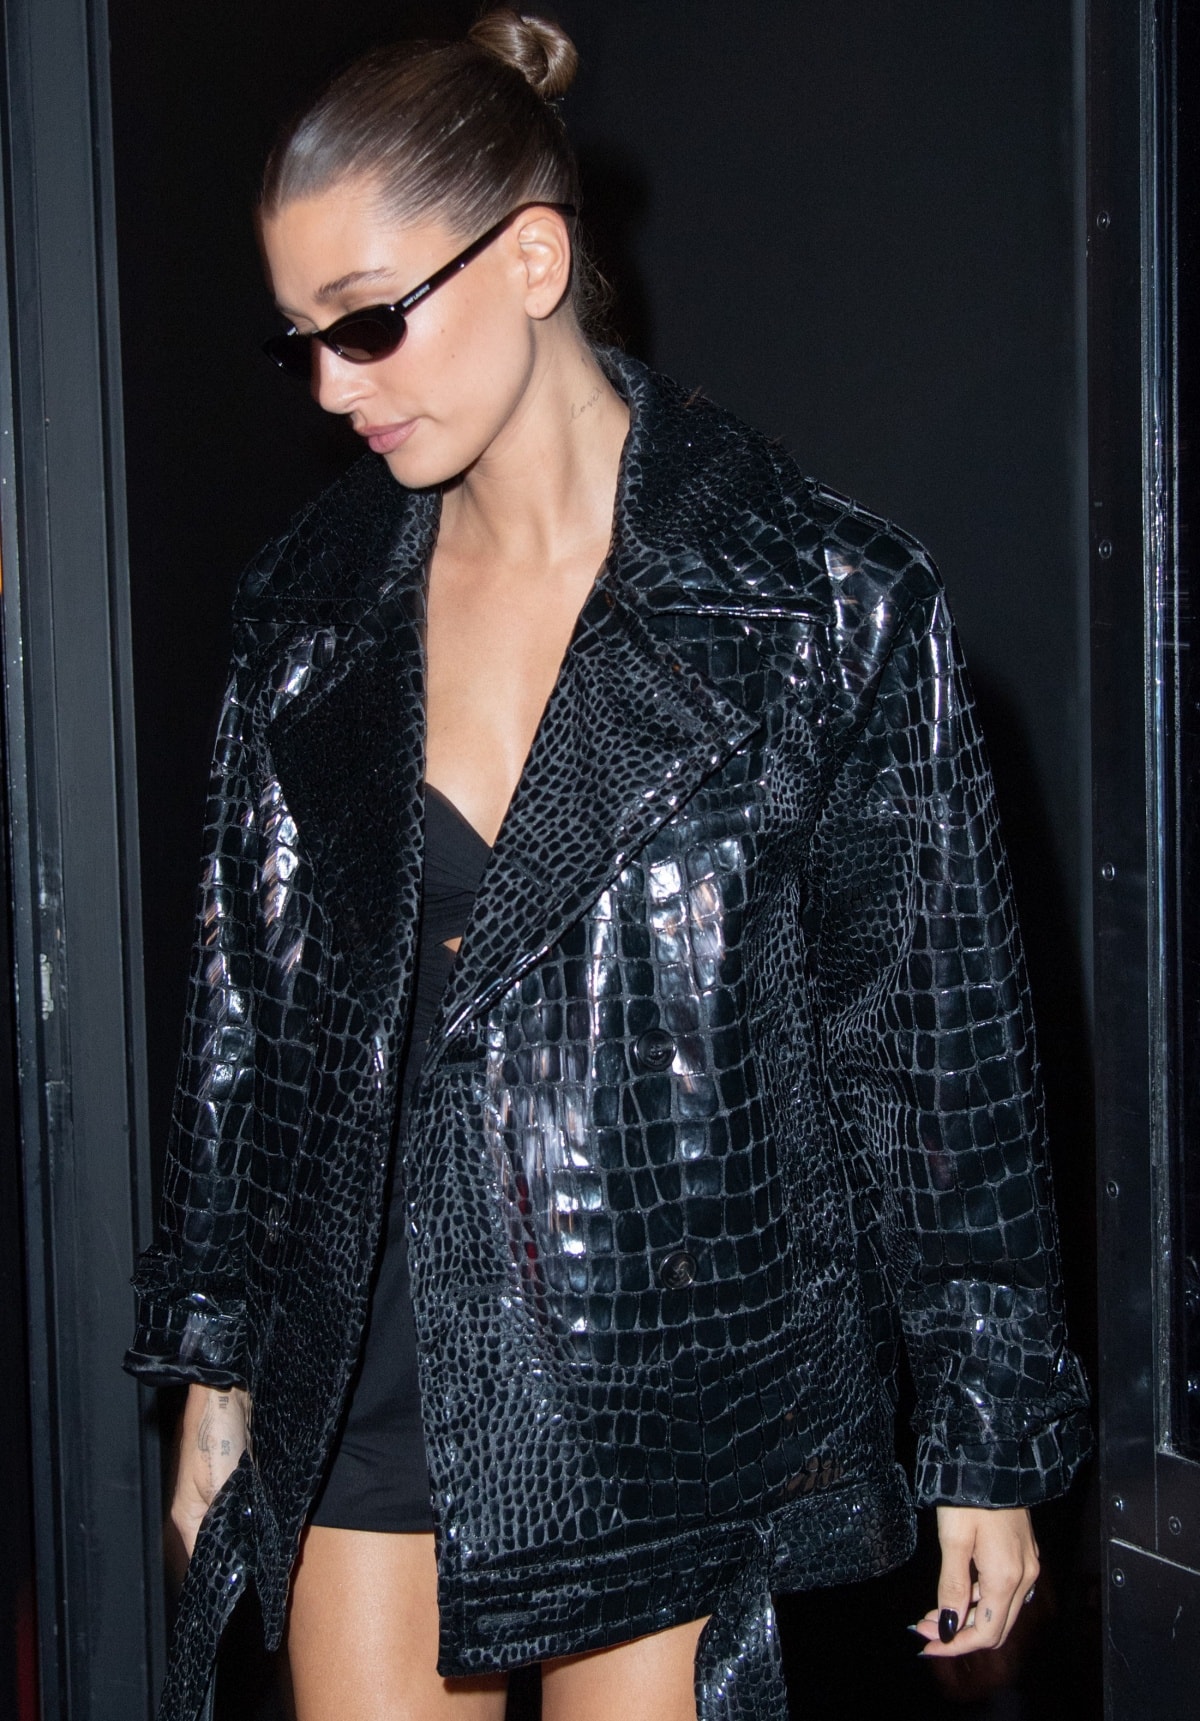 Hailey Bieber in a full Saint Laurent look during Paris Fashion Week